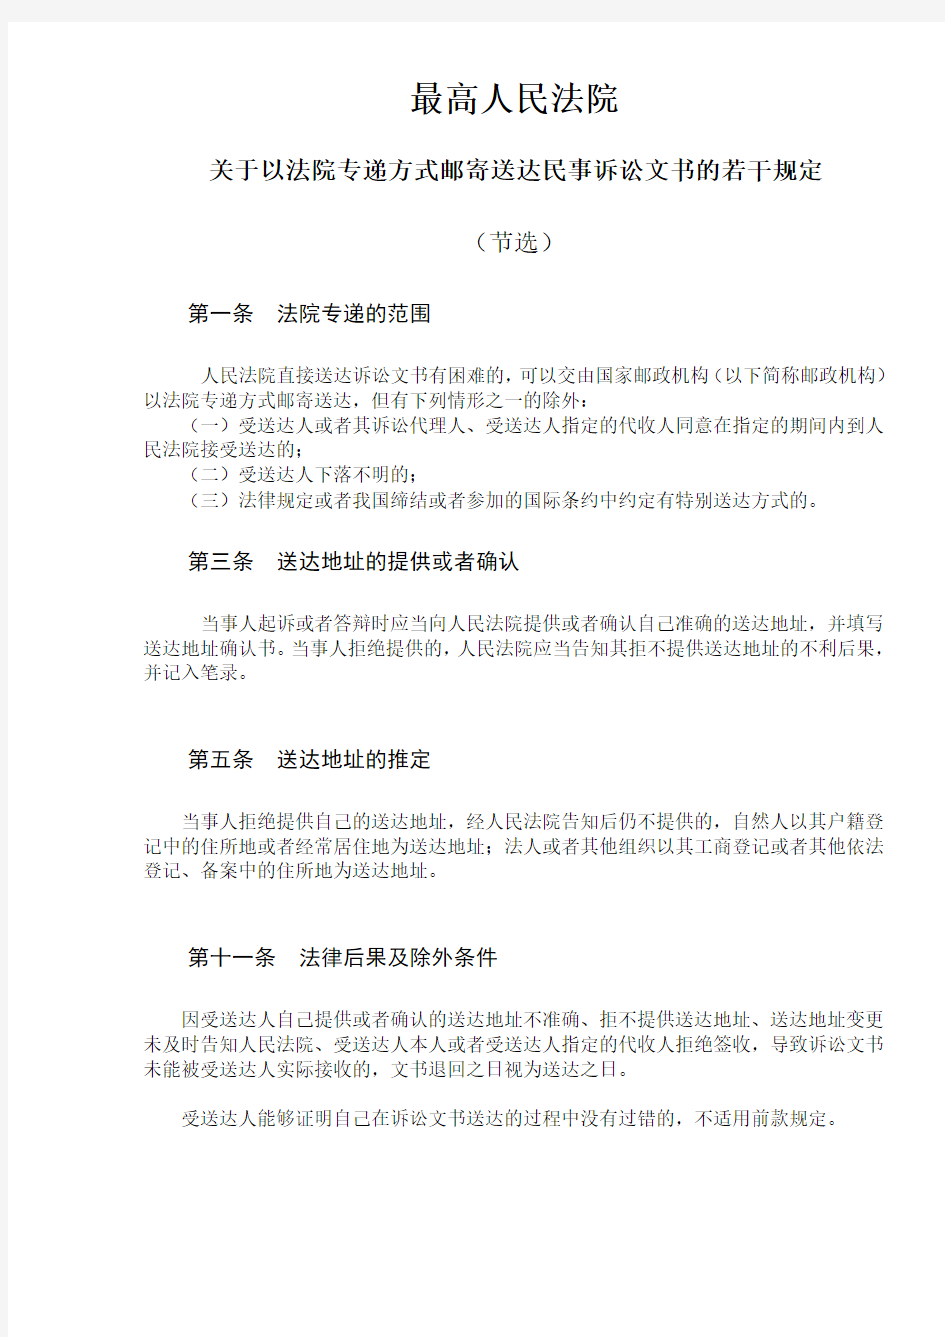 (完整版)上海法院送达地址确认书